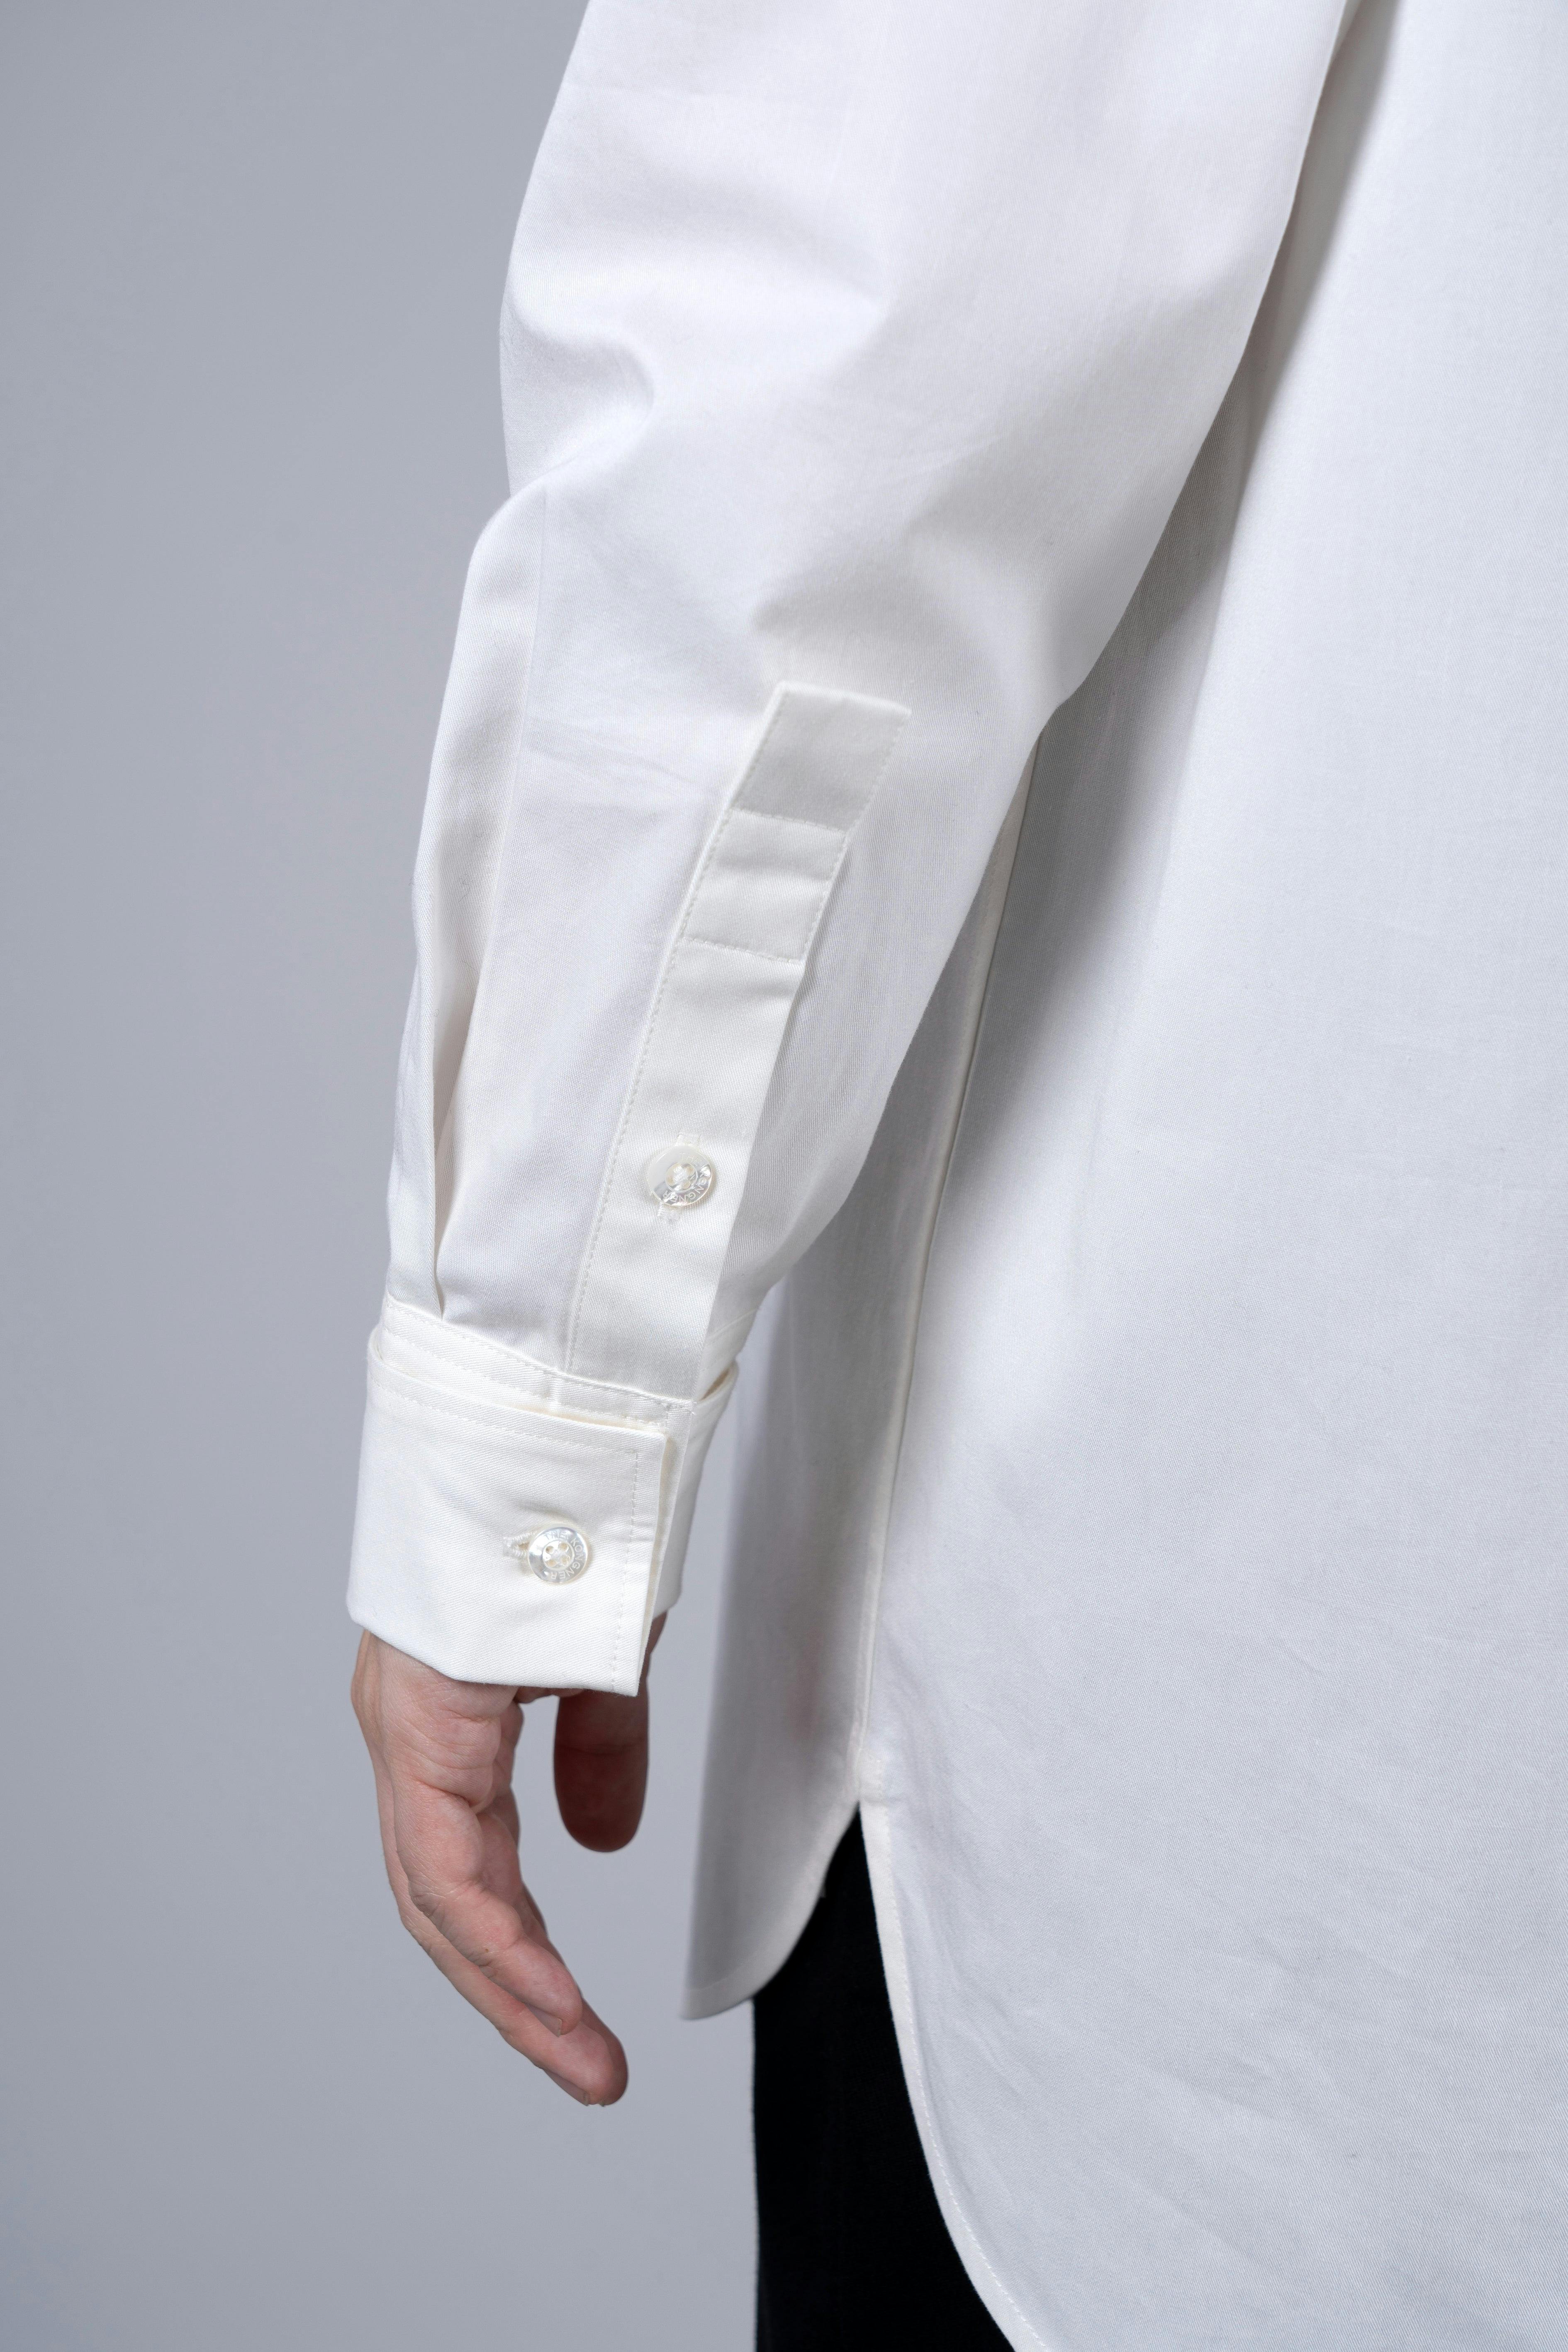 ˝ORDER˝ Oversized Shirt - Plain White